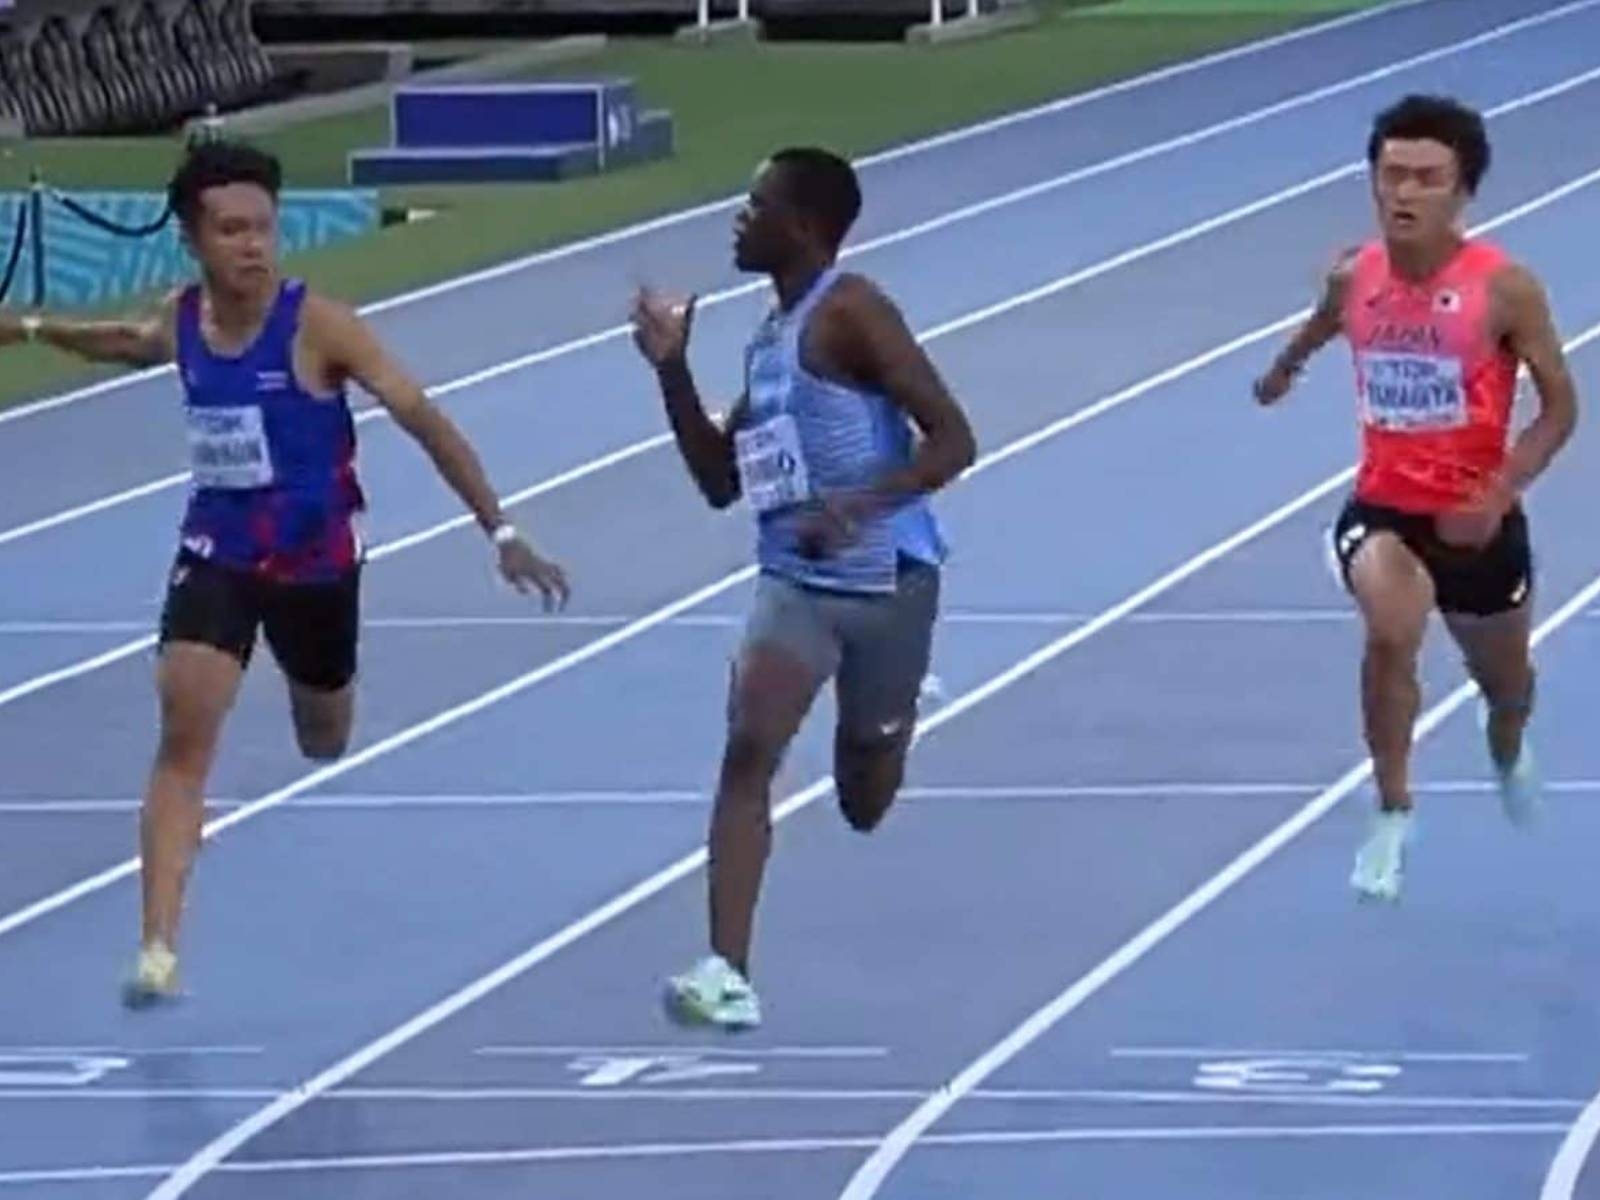 怪物短跑新星 Letsile Tebogo 於 100 公尺跑出 9.91 秒創紀錄，向對手「搖手指」則引發爭議！